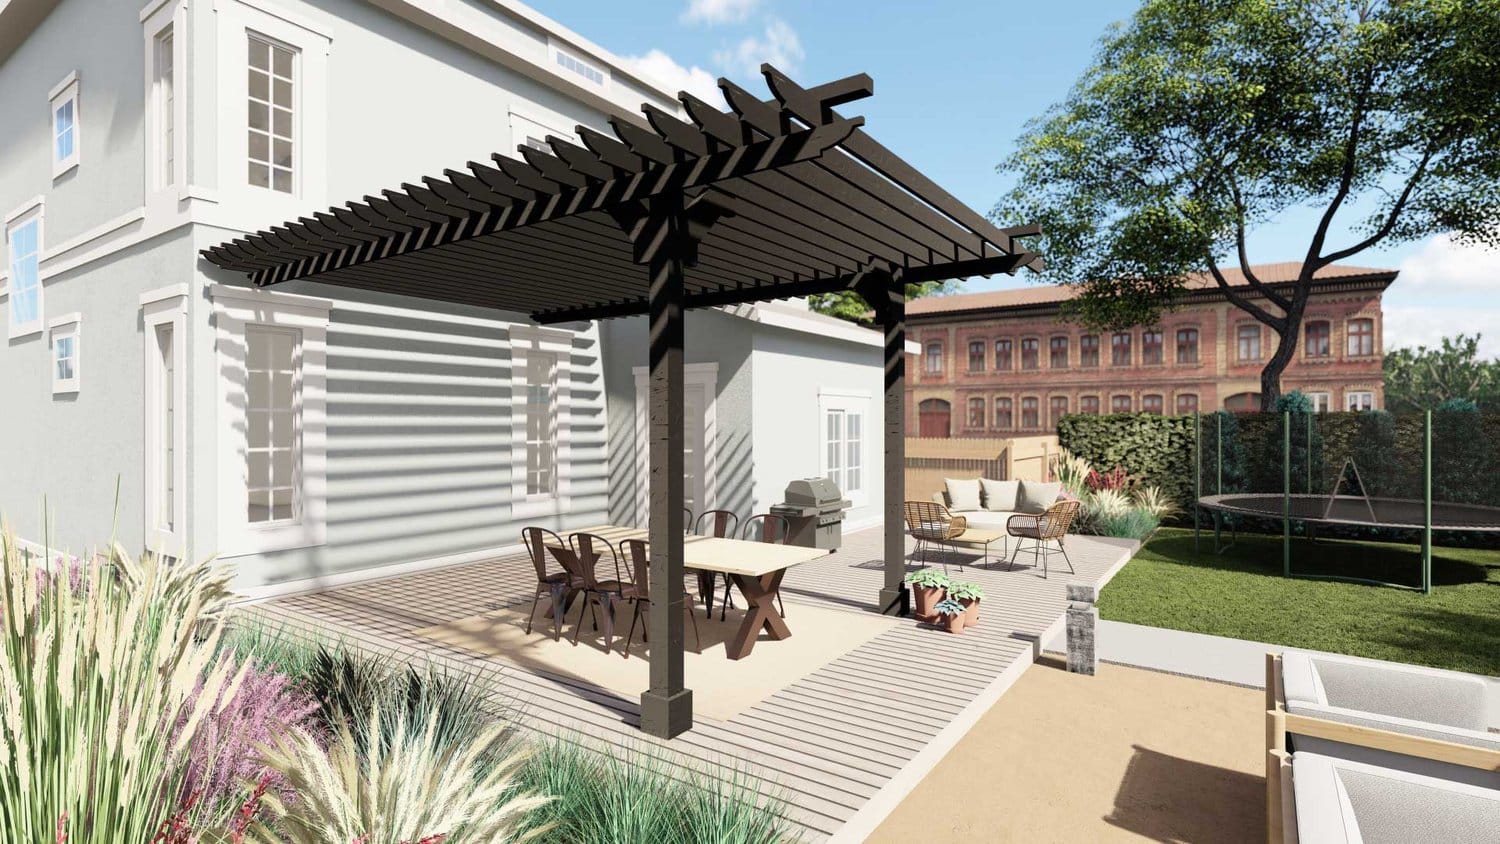 莱克伍德后院显示露台与藤架在用餐区，户外厨房和休息区，草坪区与蹦床